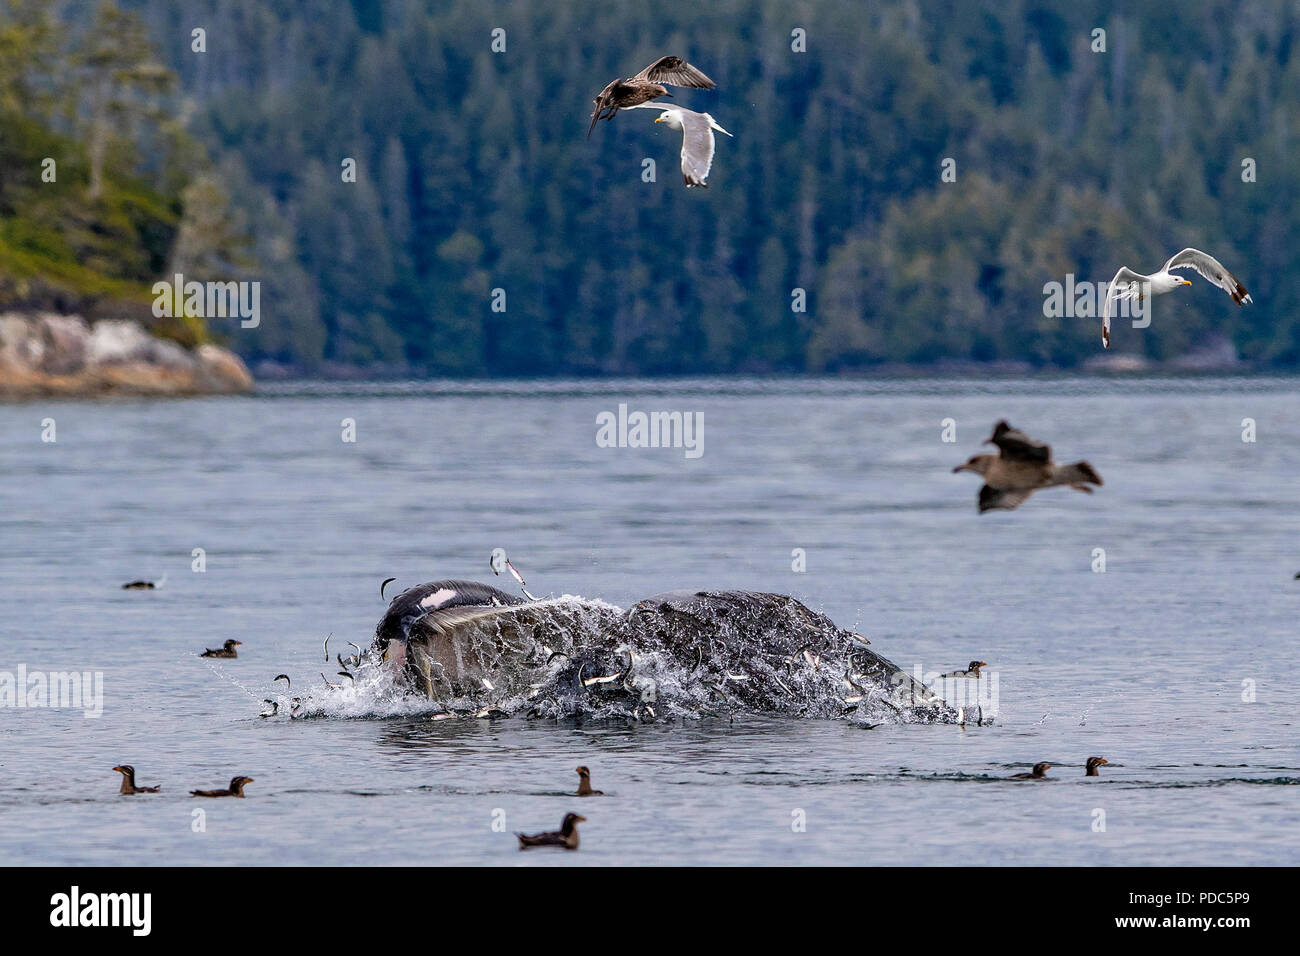 La ballena jorobada (Megaptera novaengliae) estocada alimentarse en el archipiélago Broughton, Territorio de las Primeras Naciones, British Columbia, Canadá. Foto de stock